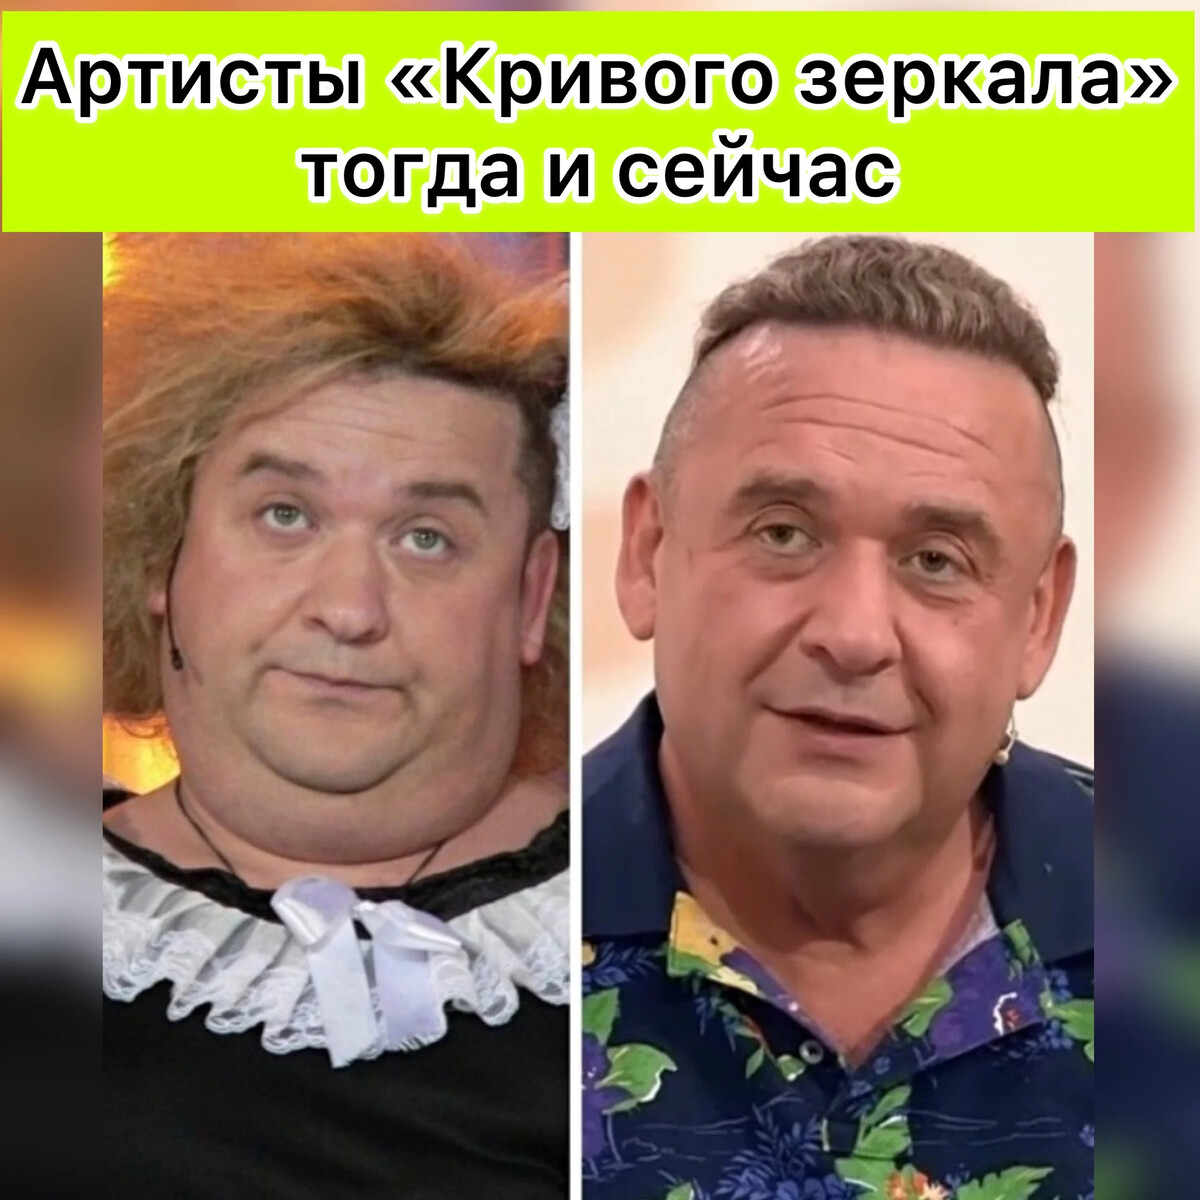 Александров морозов юморист похудел